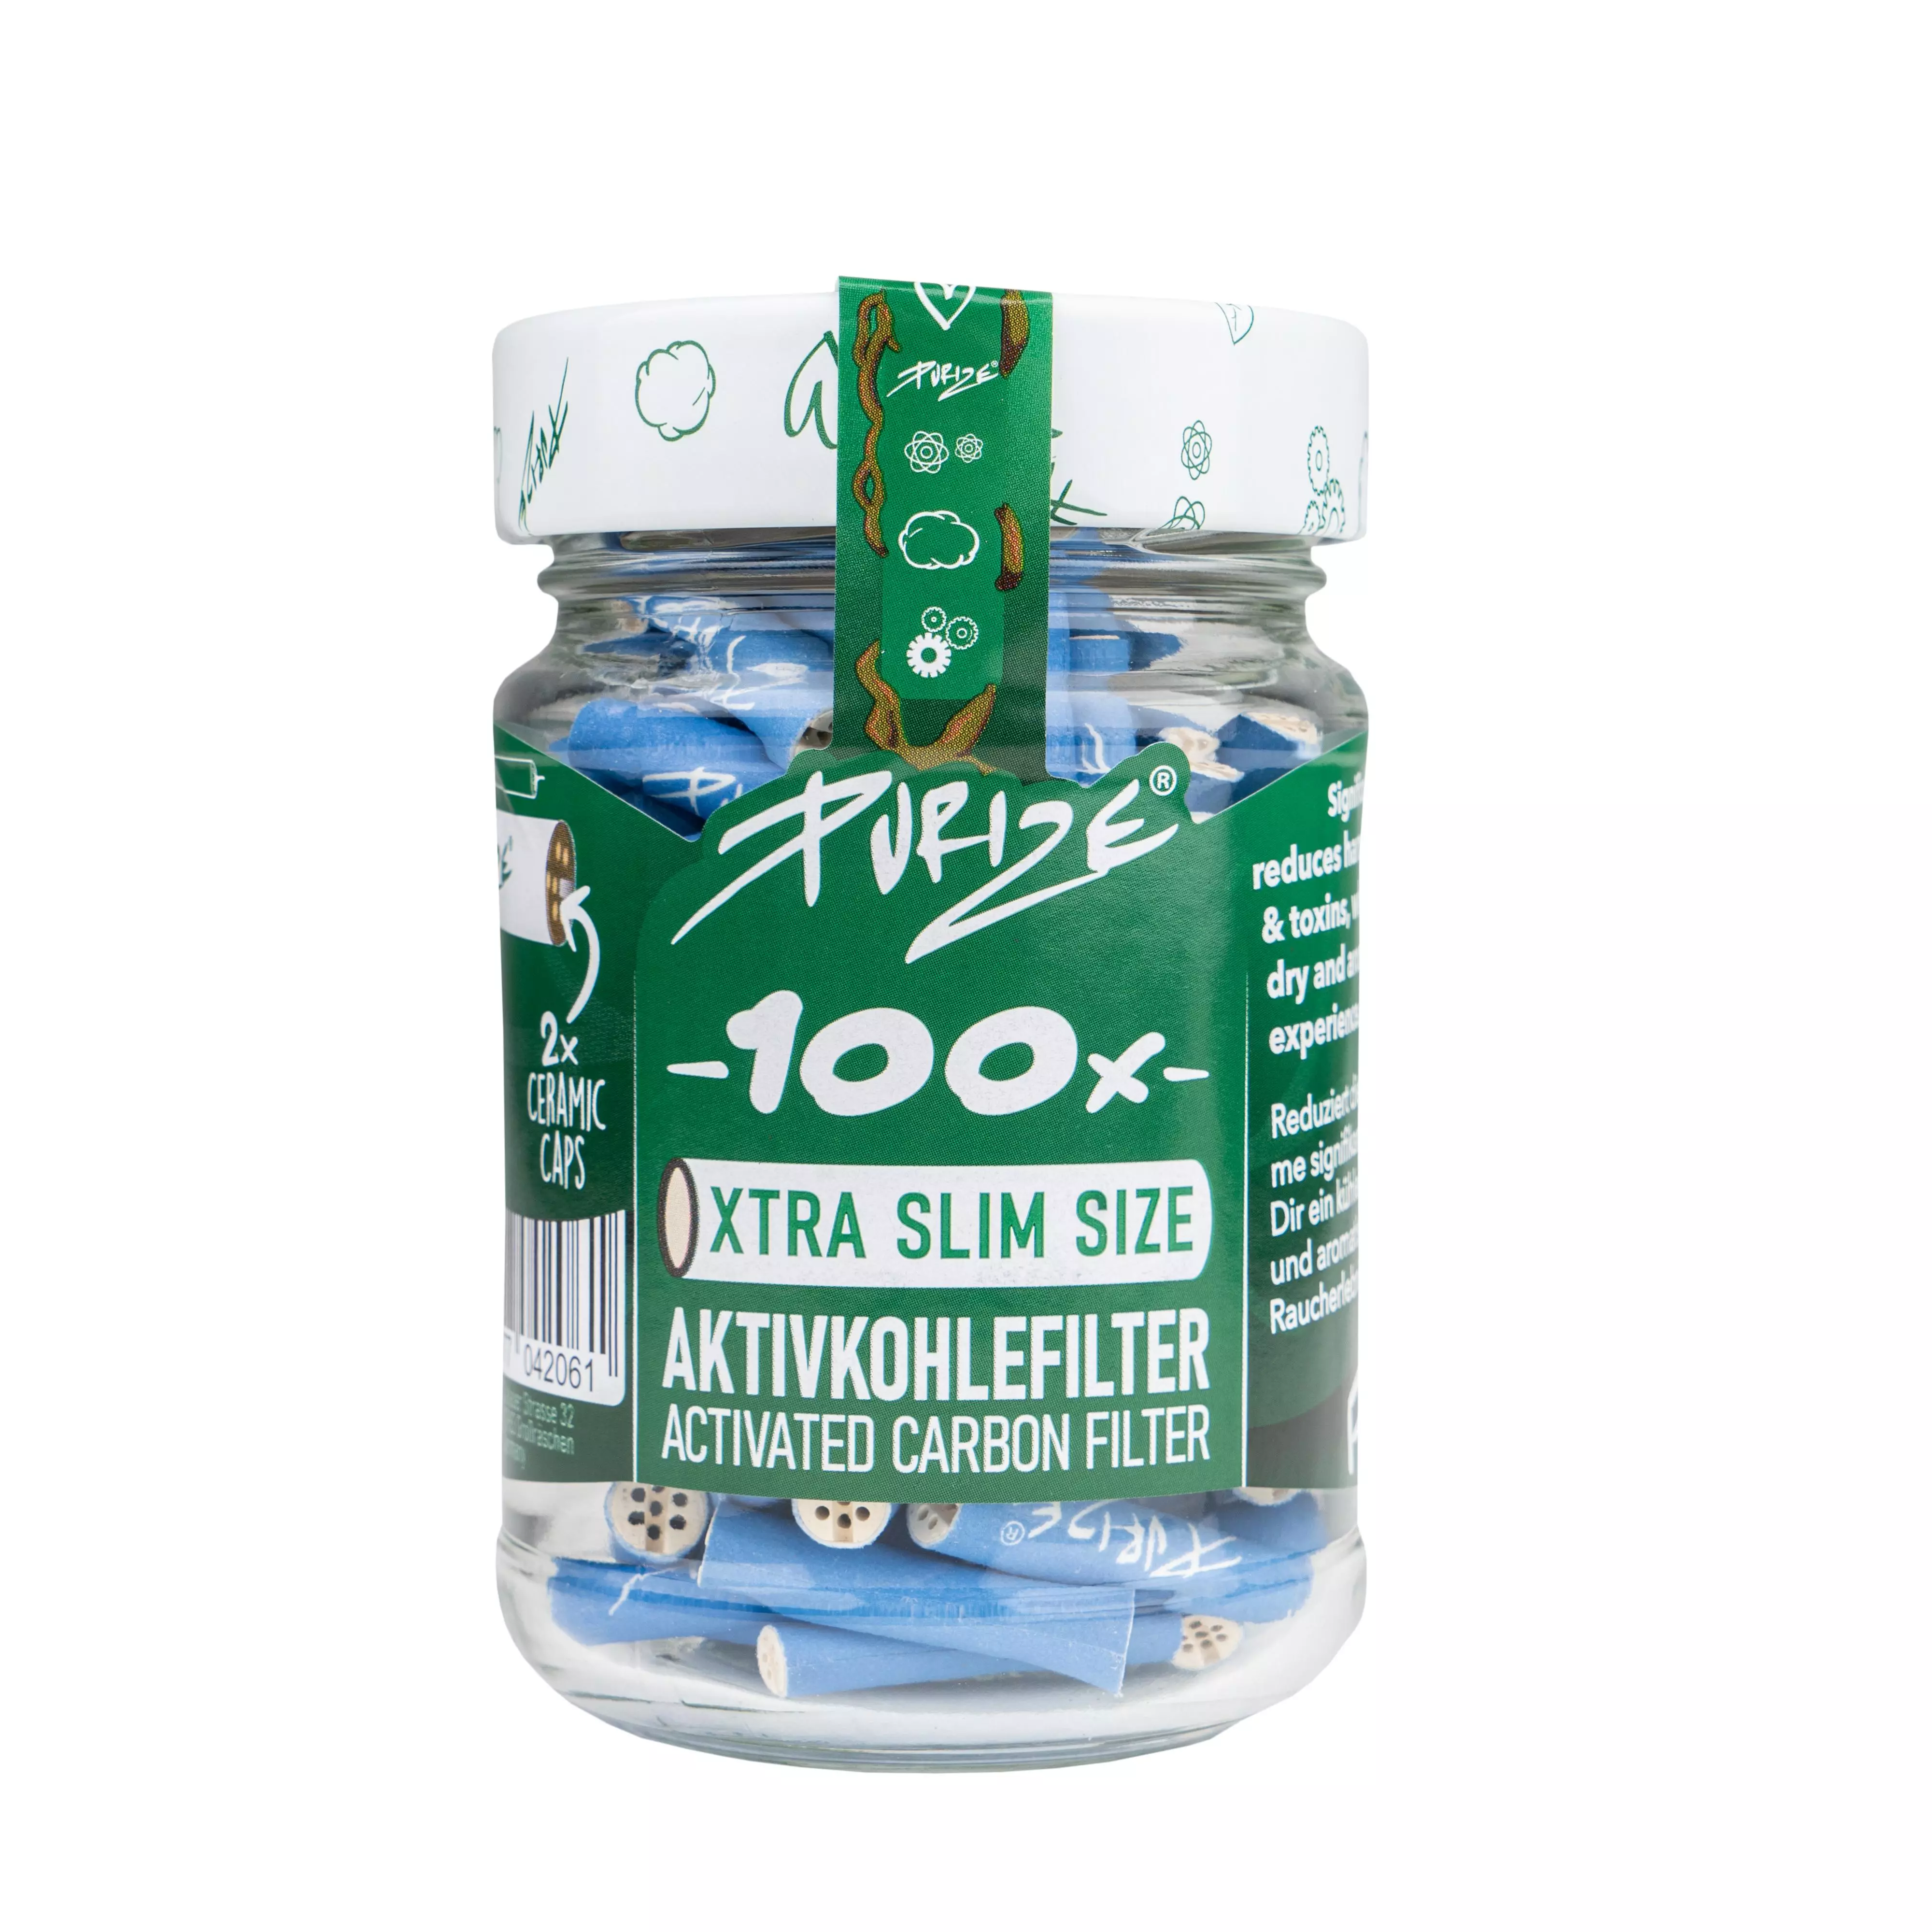 Purize Aktivkohlefilter XT Slim 100er blau Glas 